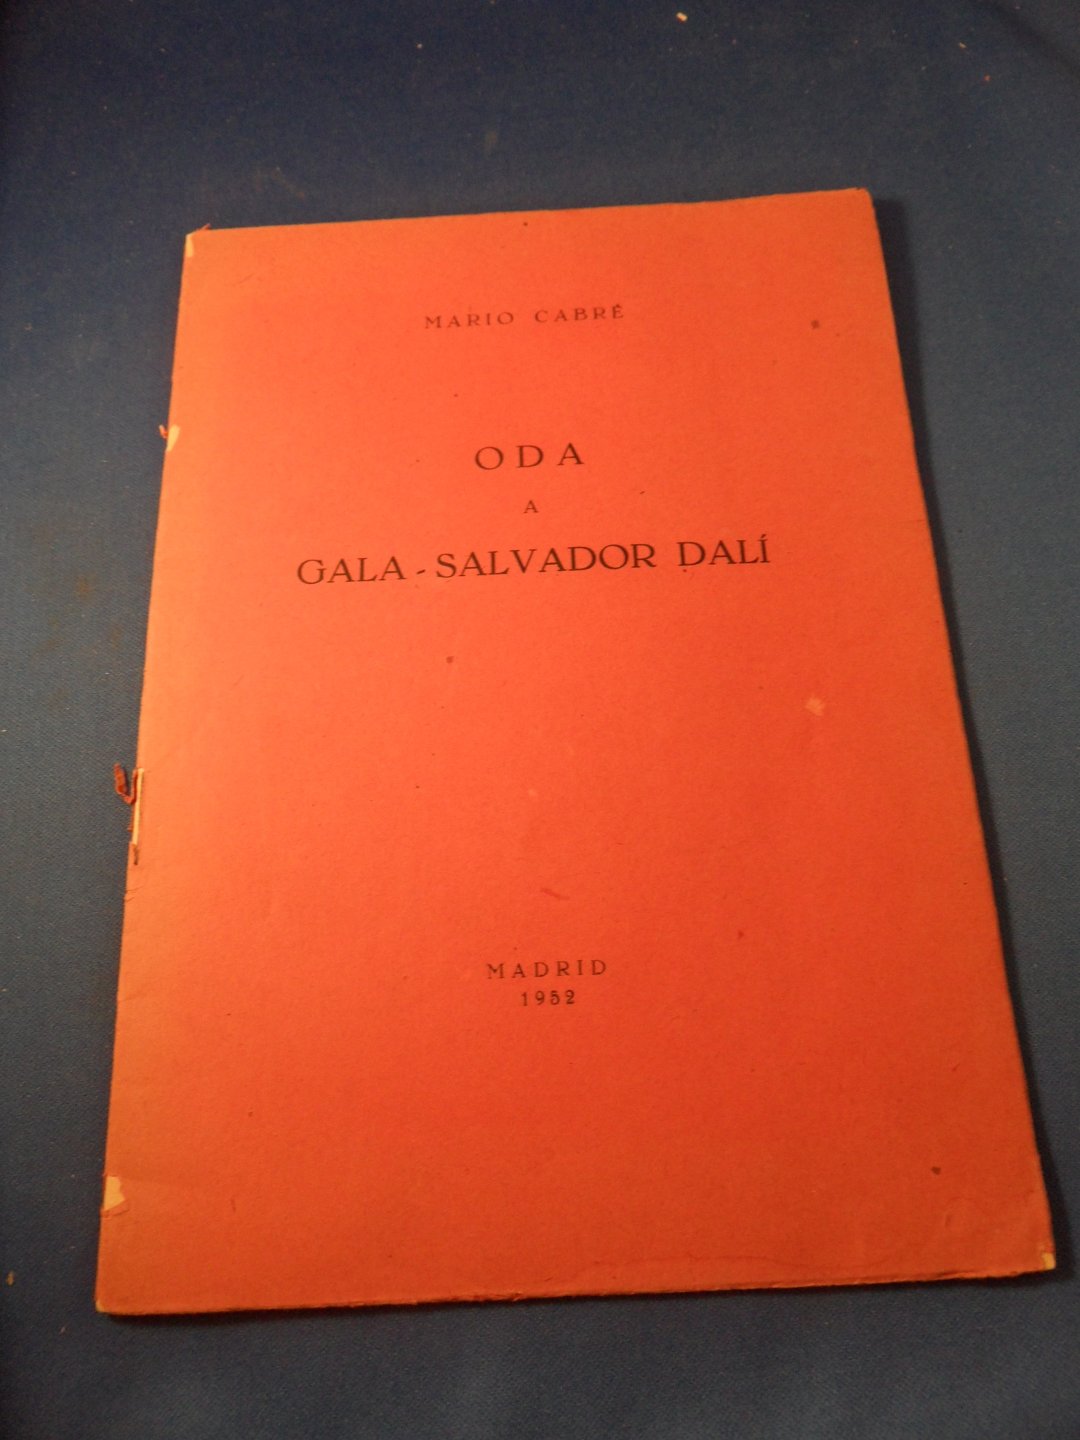 Cabré, Mario - Oda a Gala- Salvador Dali